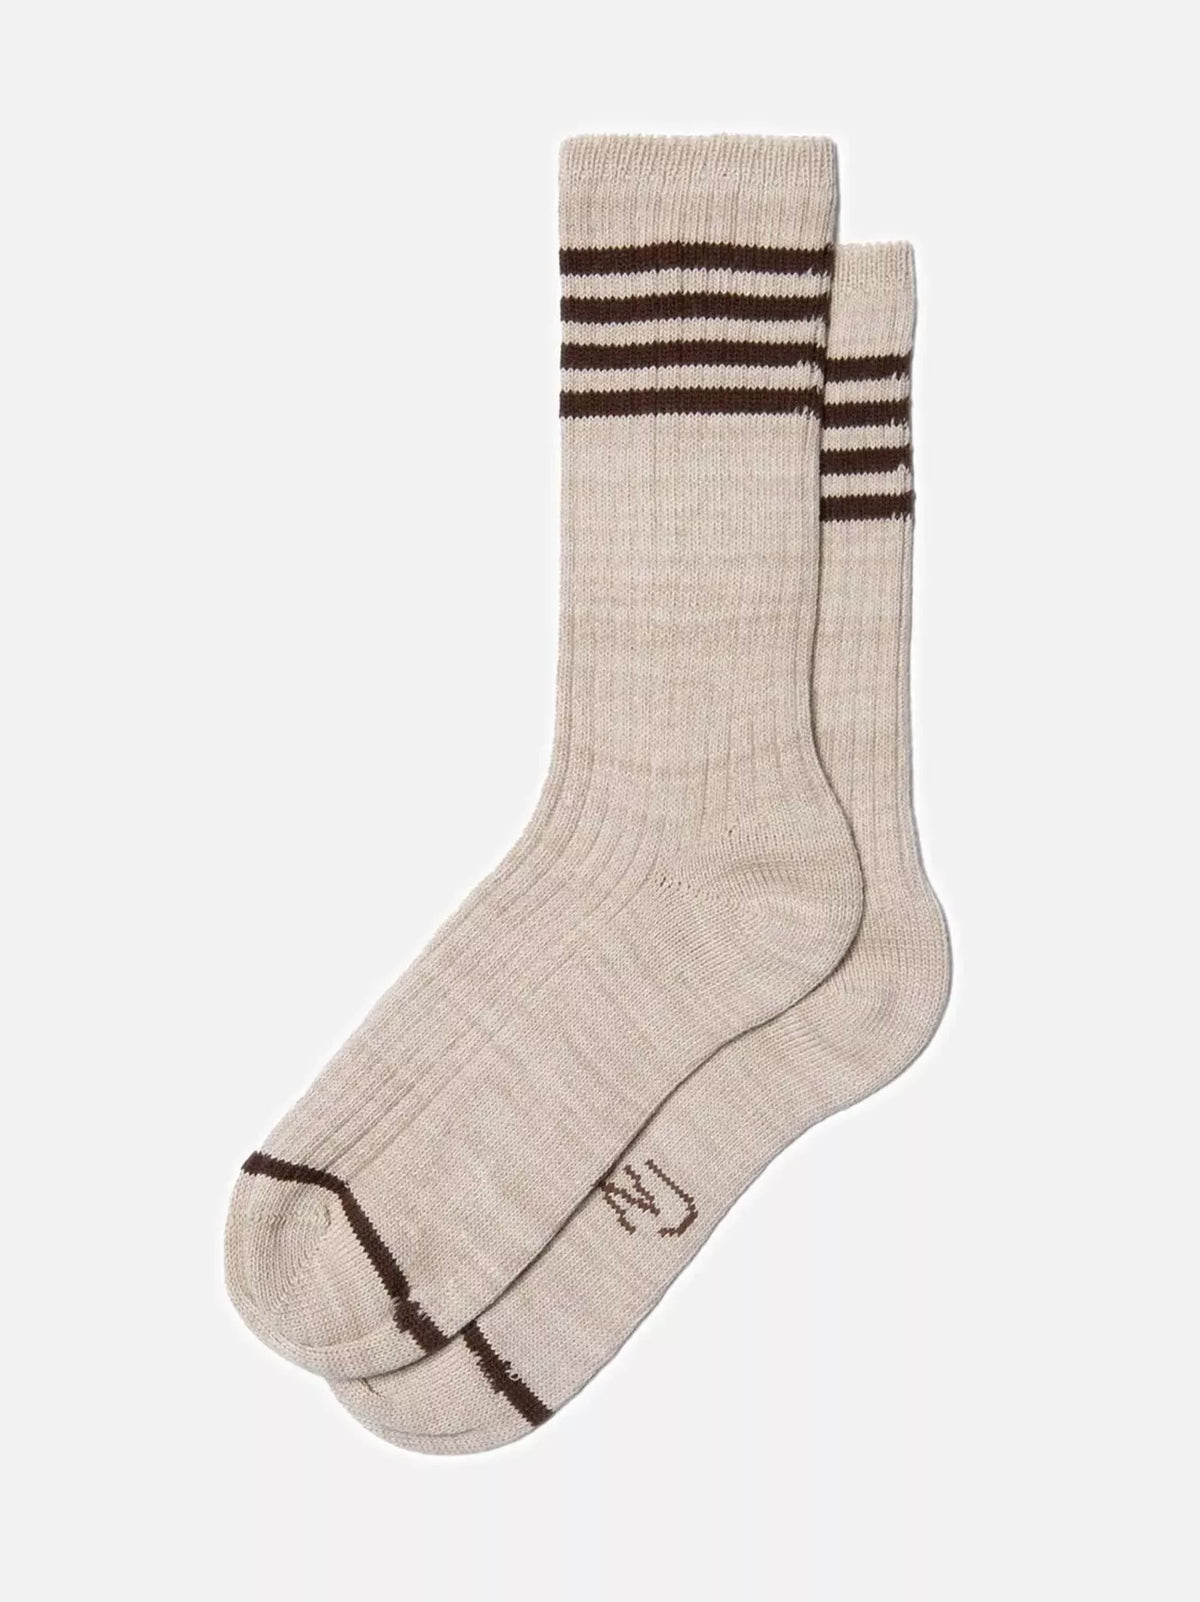 Nudie Jeans Men Tennis Socks Stripe - Beige